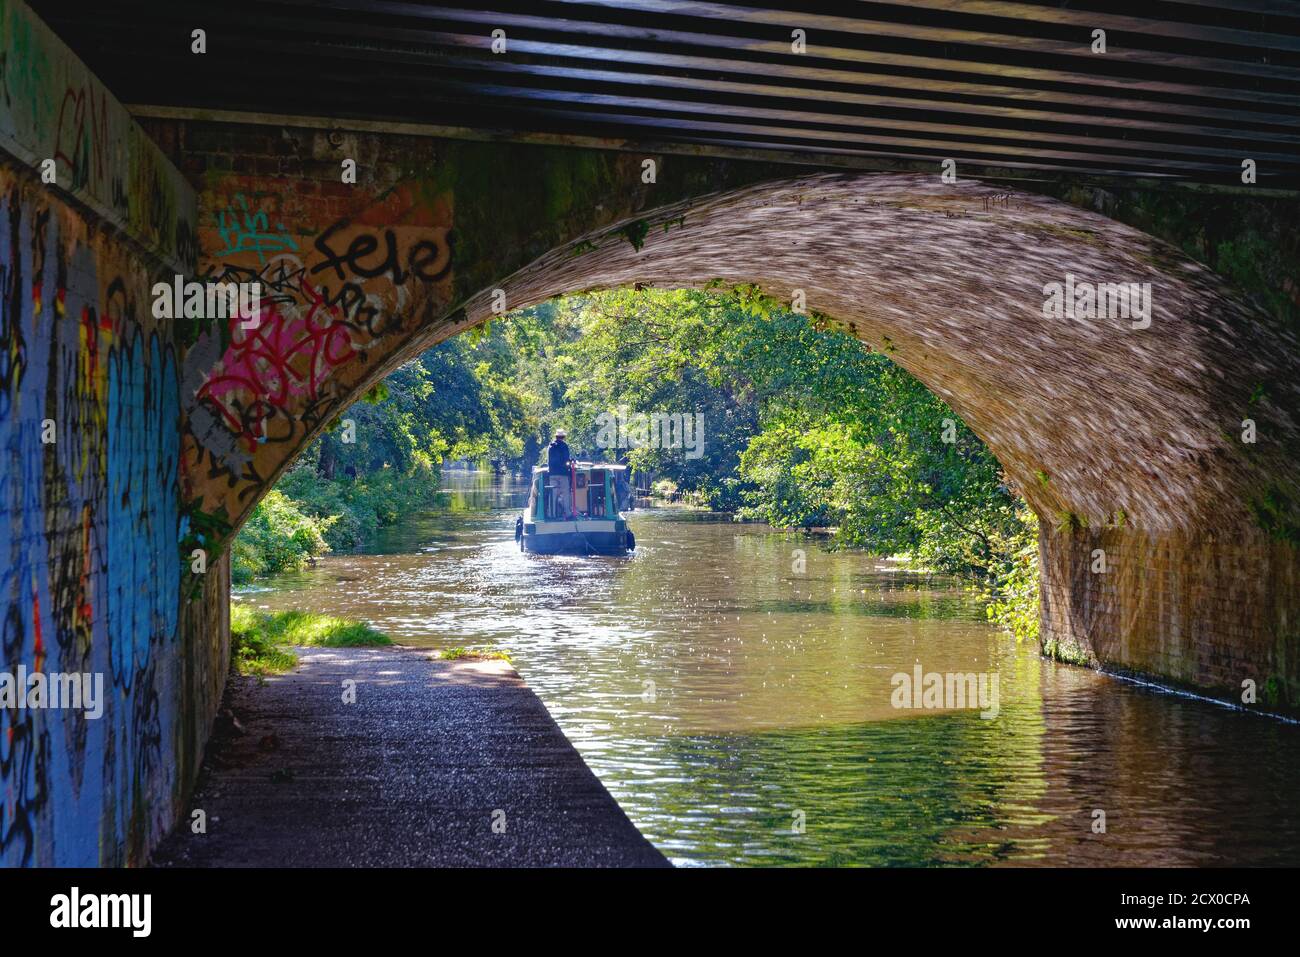 Bateaux de loisirs privés passant le long de la rivière Wey navigation et canal à New Haw lors d'une journée d'été ensoleillée, Surrey Angleterre Royaume-Uni Banque D'Images